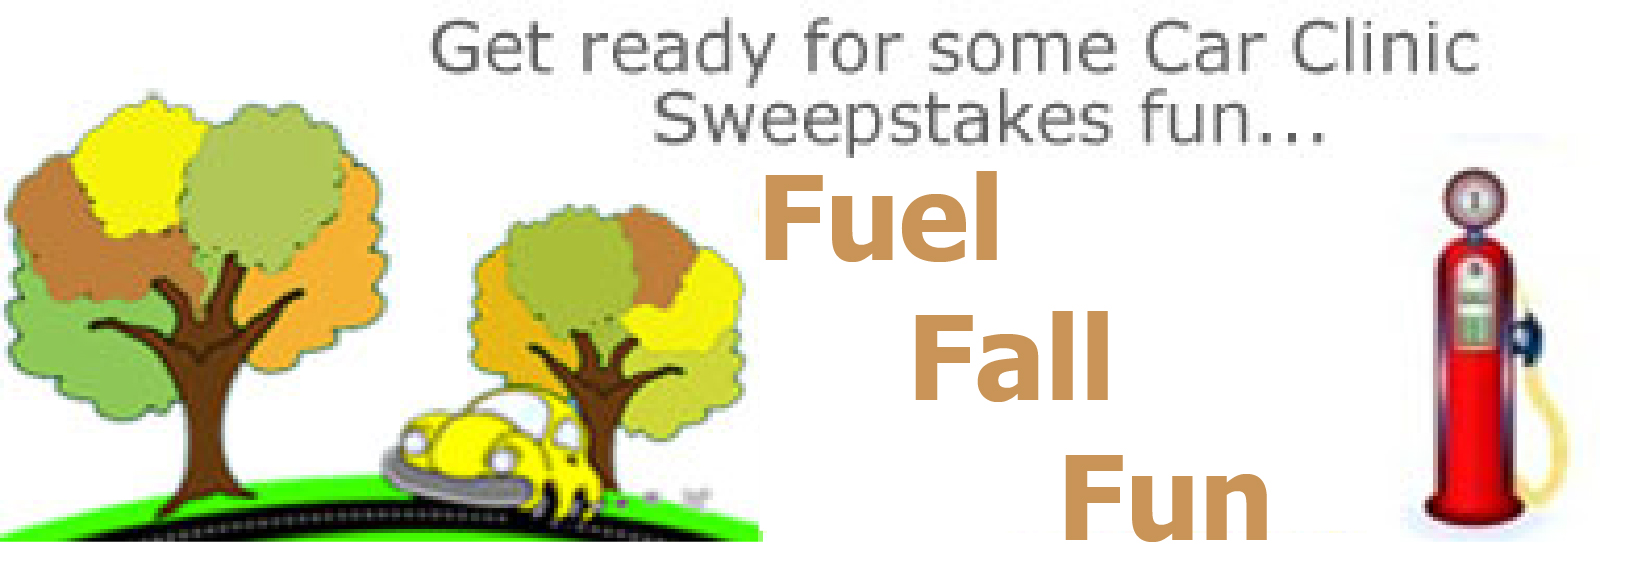 "Fuel Fall Fun" Sweepstakes